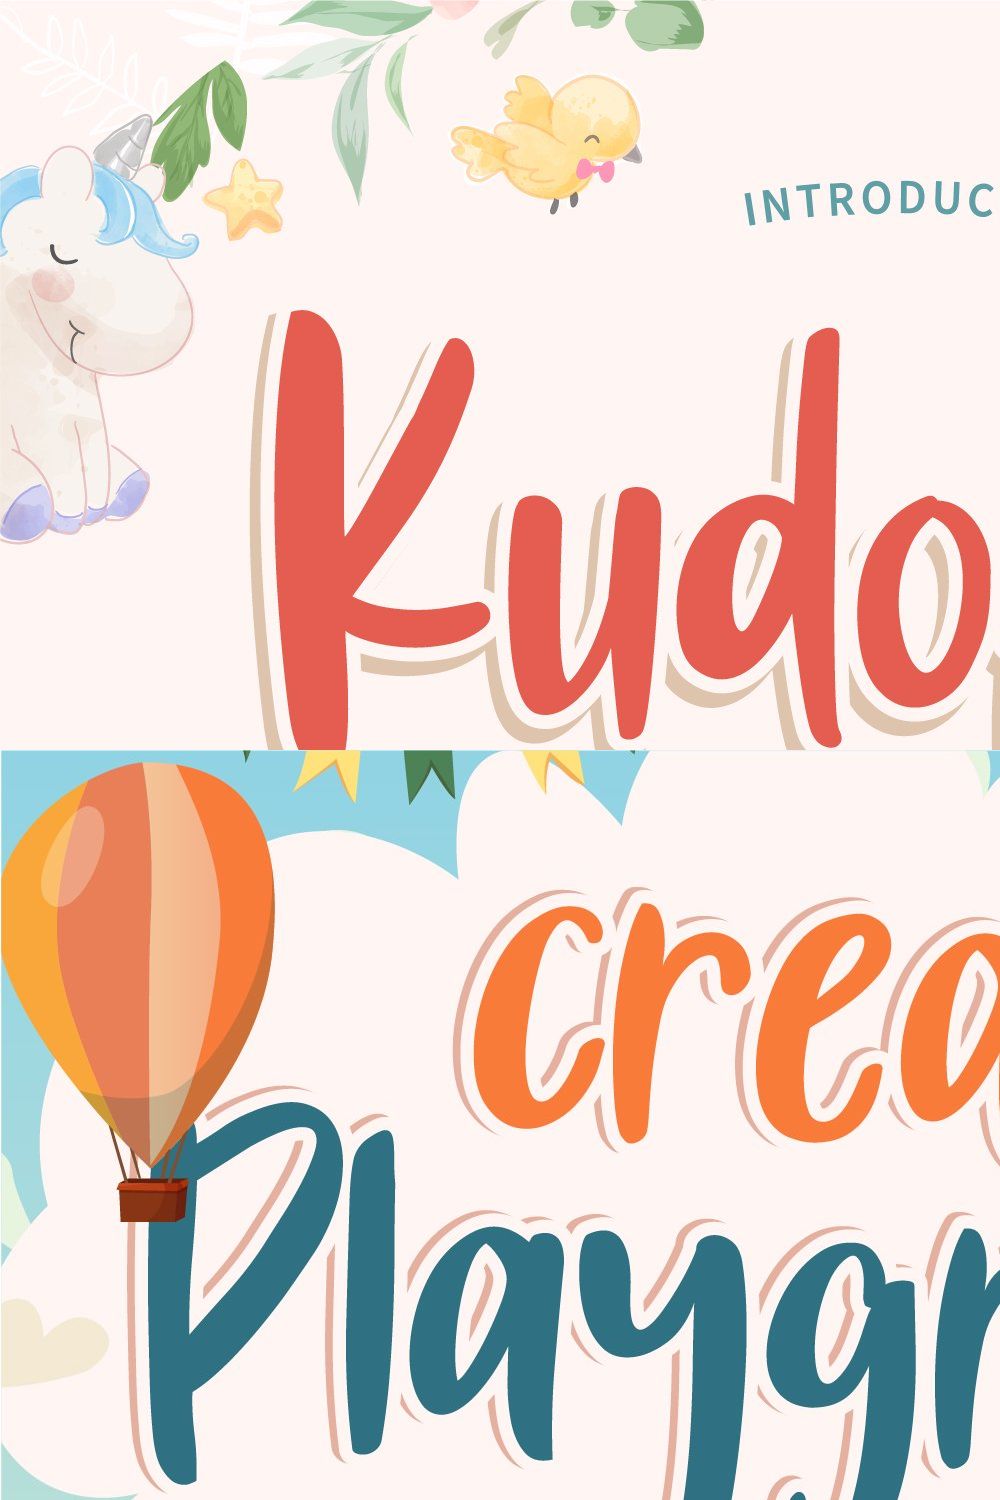 Kudofun - Stunning Display Font pinterest preview image.